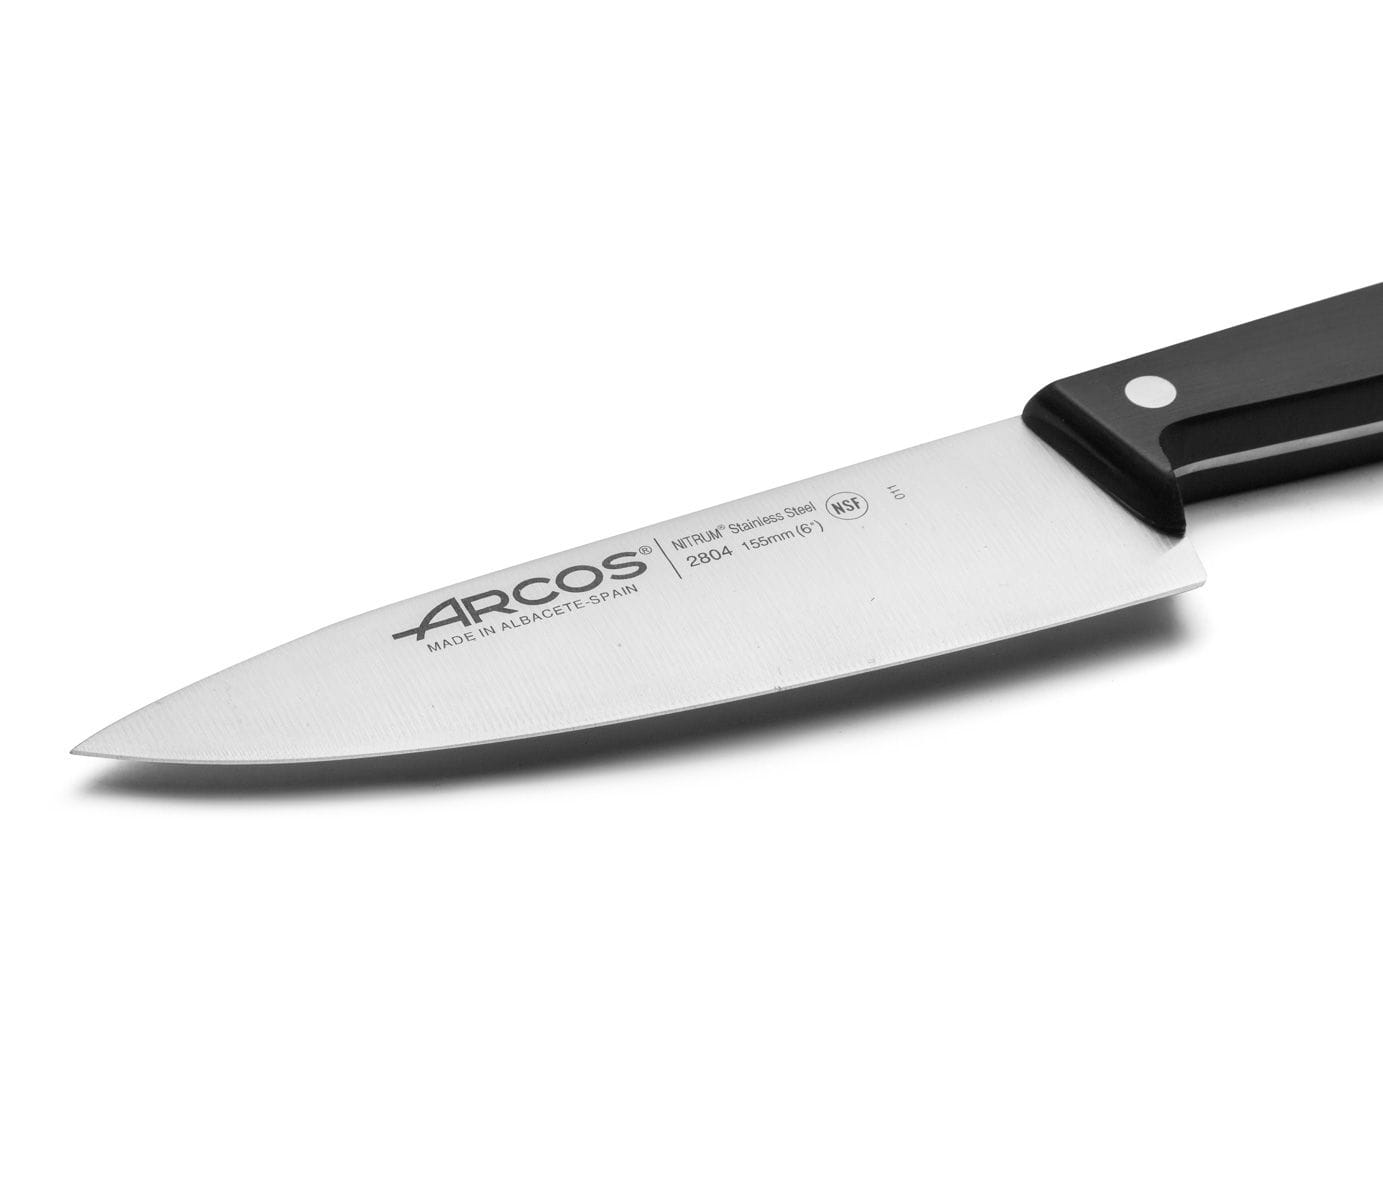 ARCOS Cuchillo Cocina Arcos 175cm Profesional Premium Chef Asado